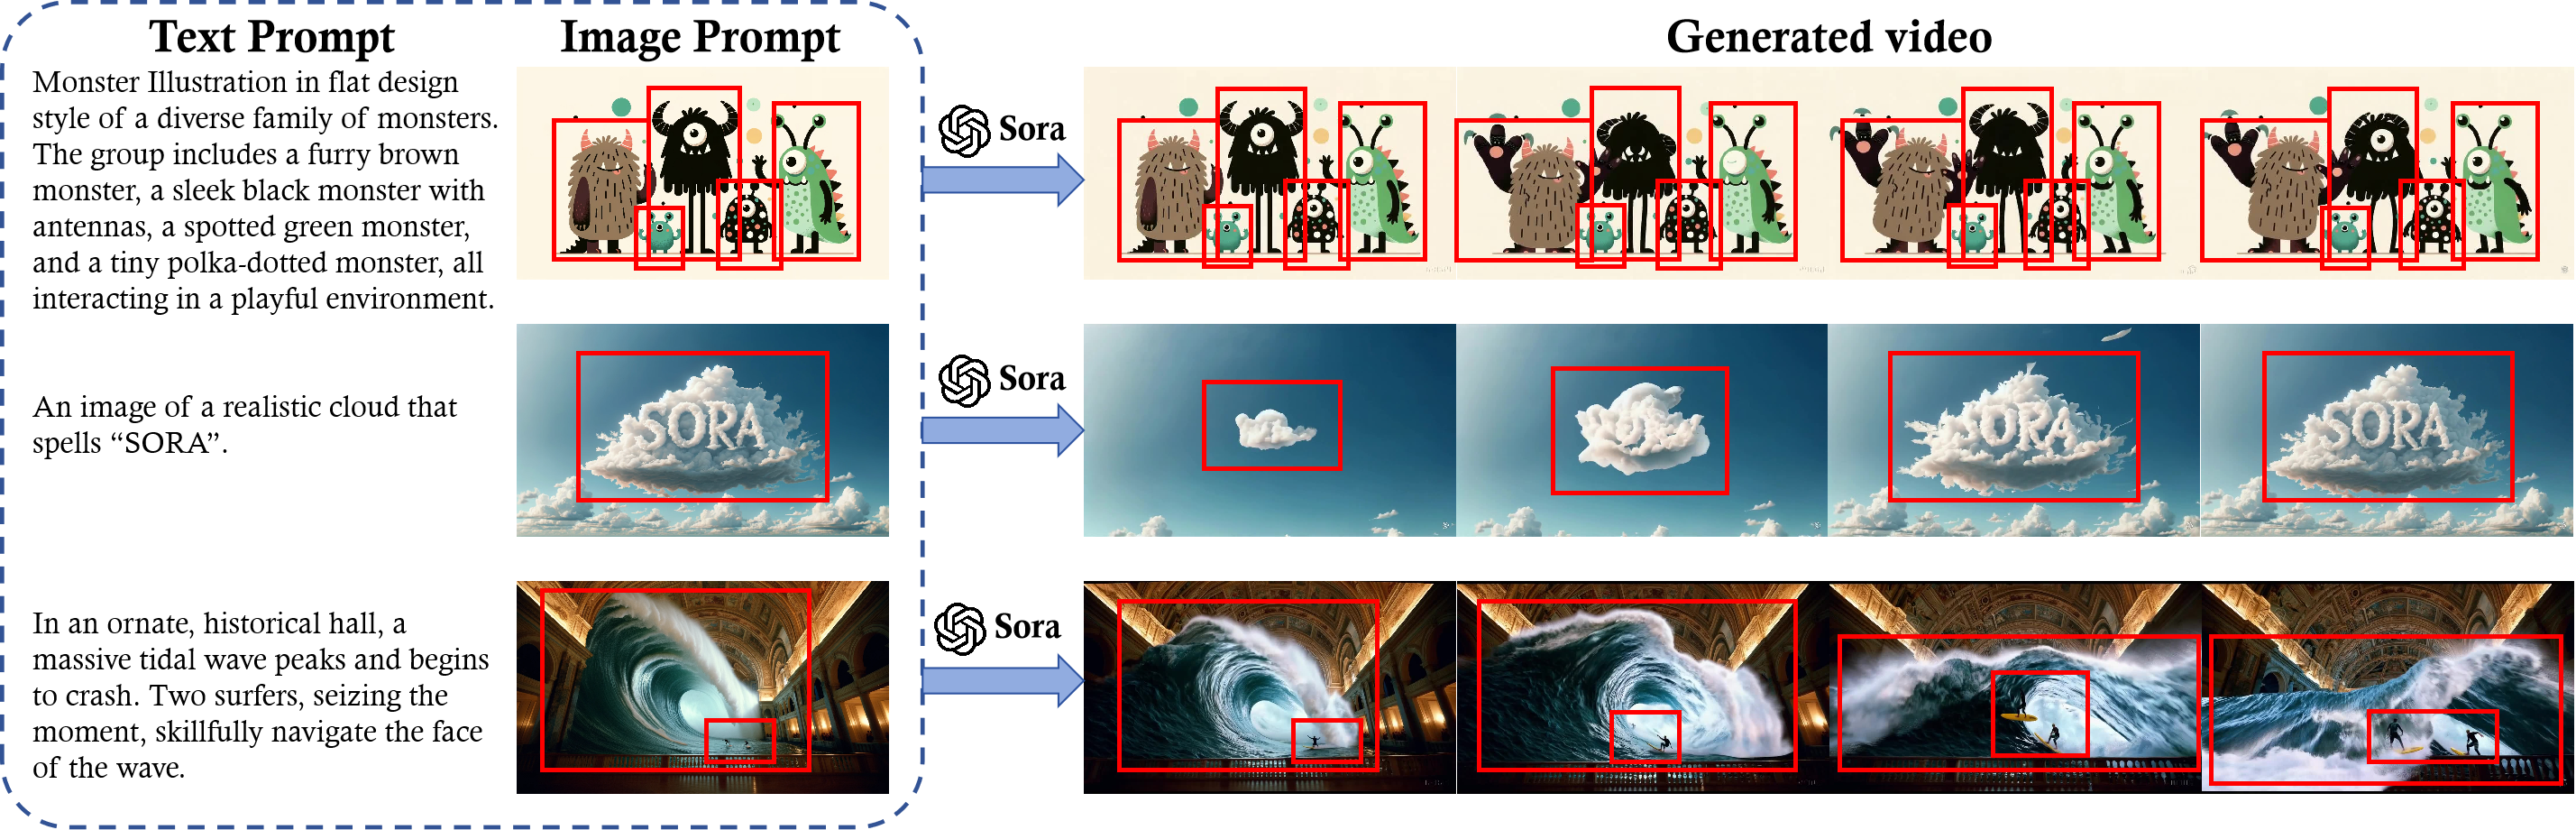 图 16: 这个示例展示了图像提示是如何指引 Sora 的文本到视频模型创造出视频的。红色框体突出显示了每个场景的核心元素——多样化设计的怪物、拼成“SORA”的云朵，以及在装饰华丽的大厅中面对巨大潮浪的冲浪者。